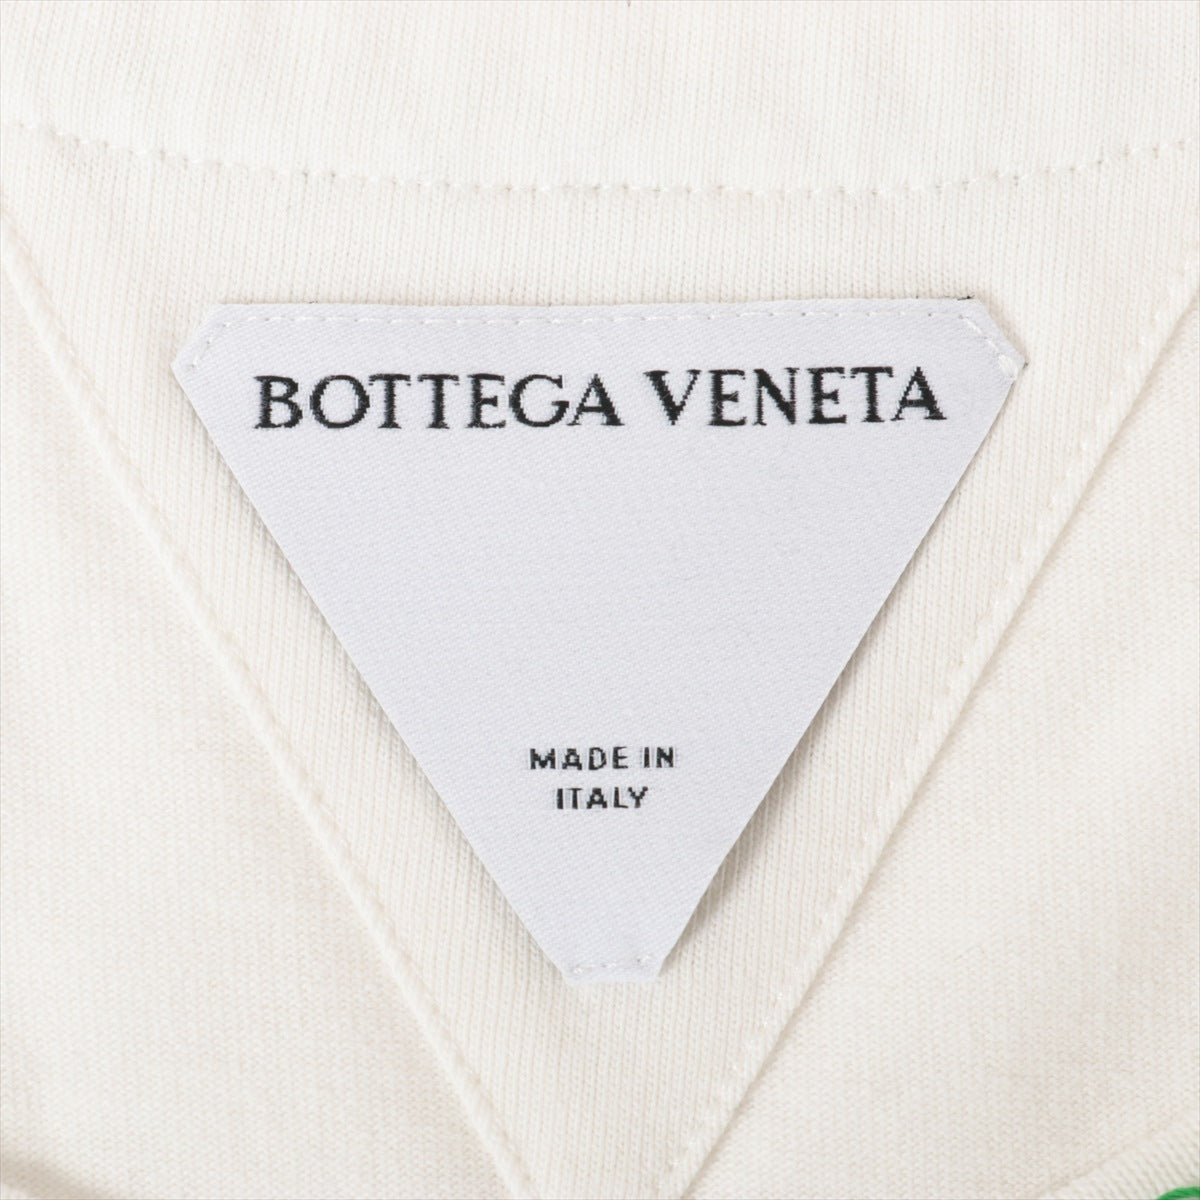 Bottega Veneta 22SS Cotton T-shirt S Men's White x green  686506